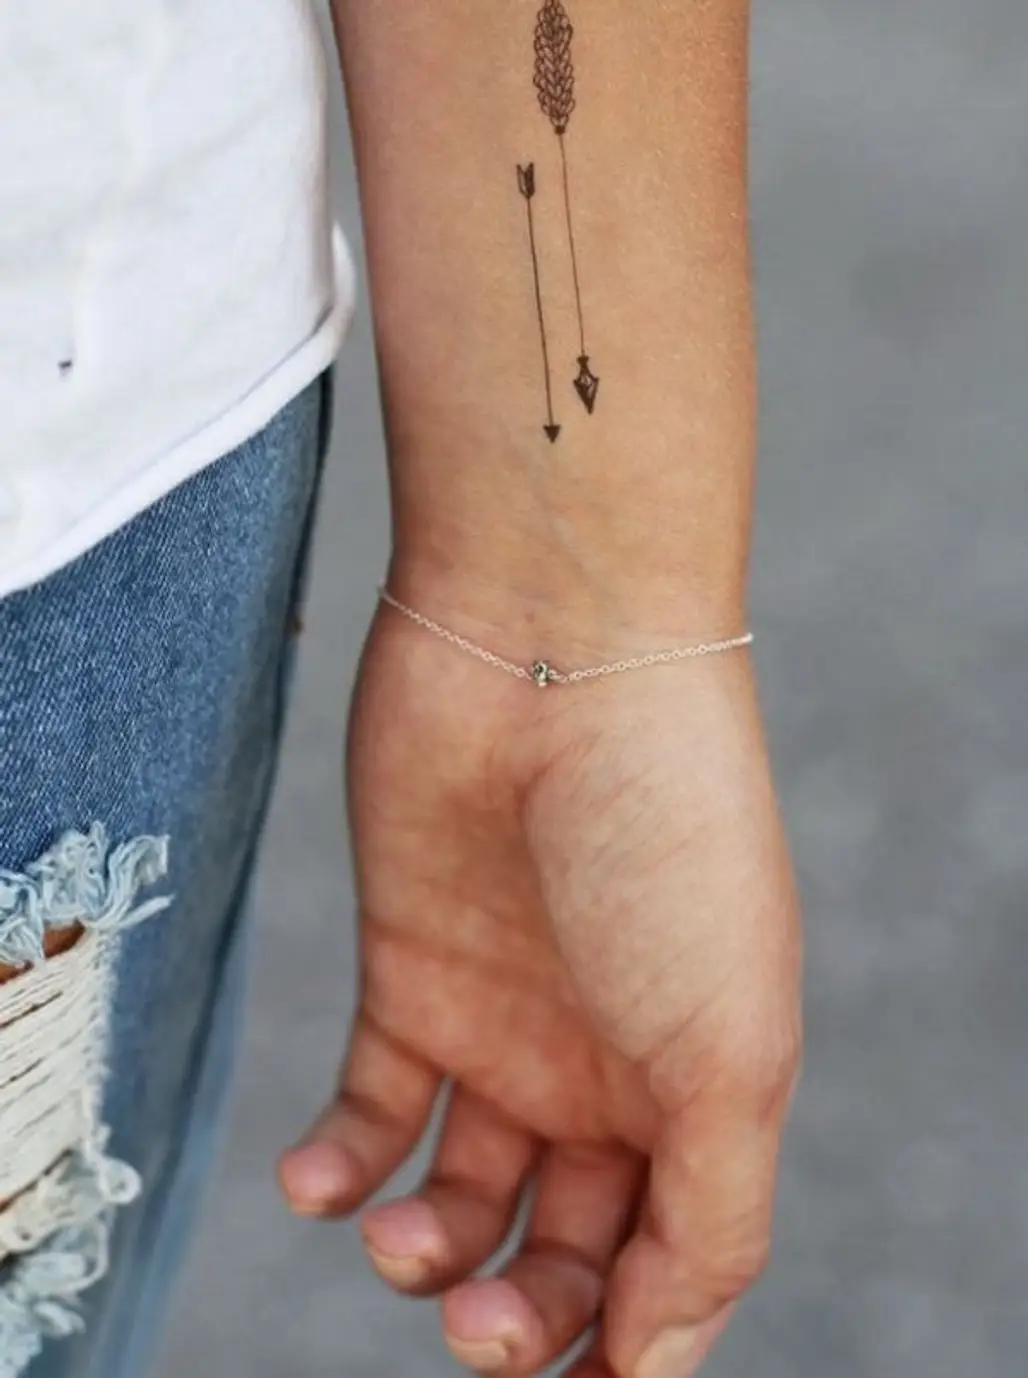 Best Friend Birthday Wrist Tattoos | Small friendship tattoos, Friendship  tattoos, Friend tattoos small